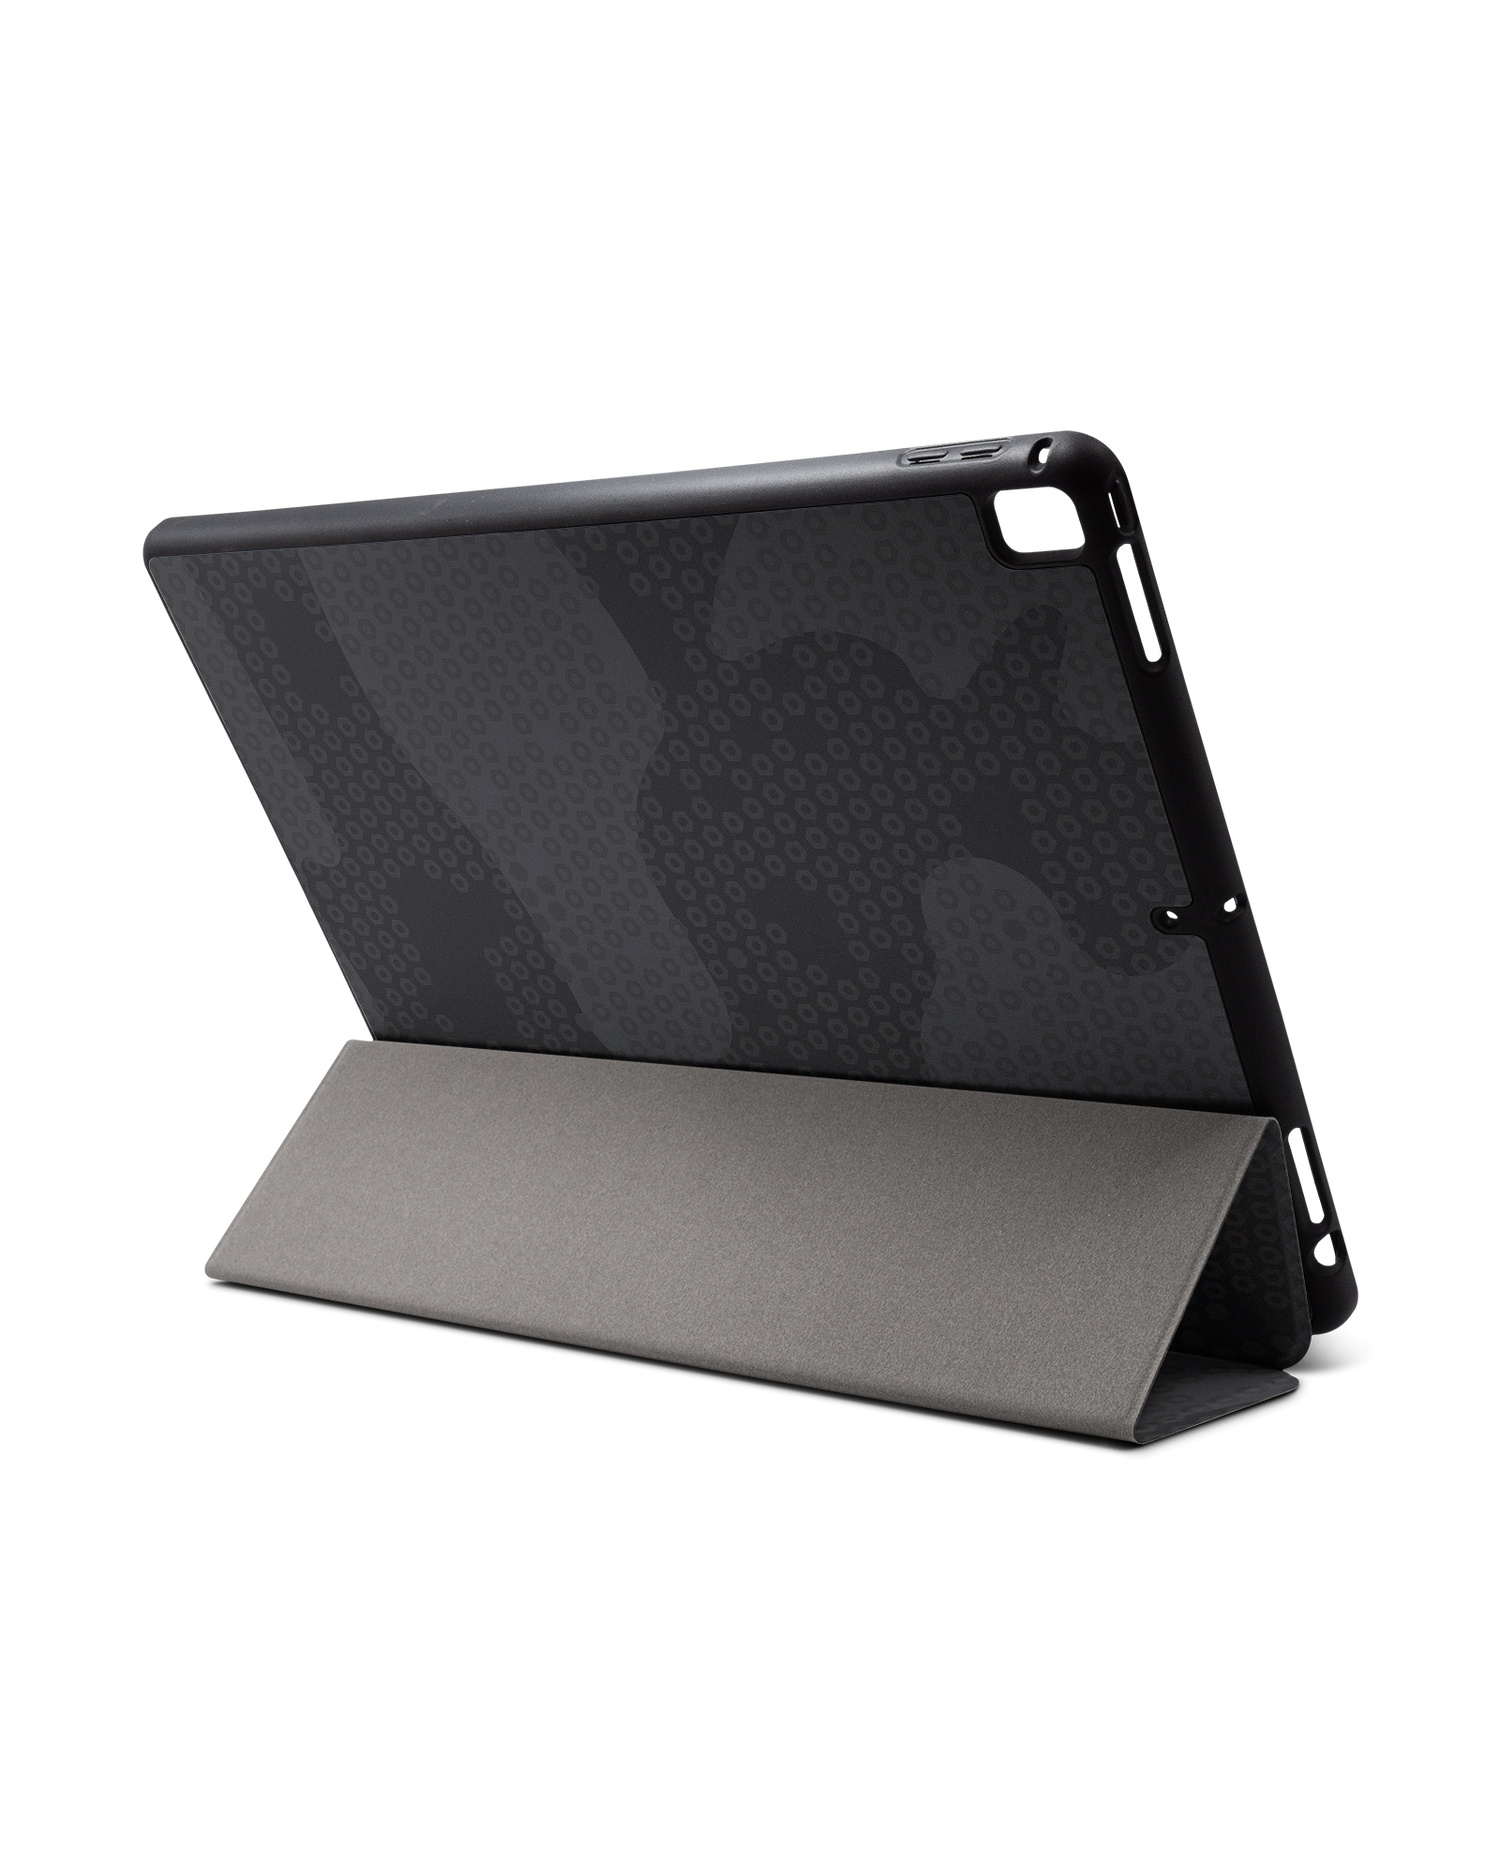 Spec Ops Dark iPad Hülle mit Stifthalter für Apple iPad Pro 2 12.9'' (2017): Aufgestellt im Querformat von hinten